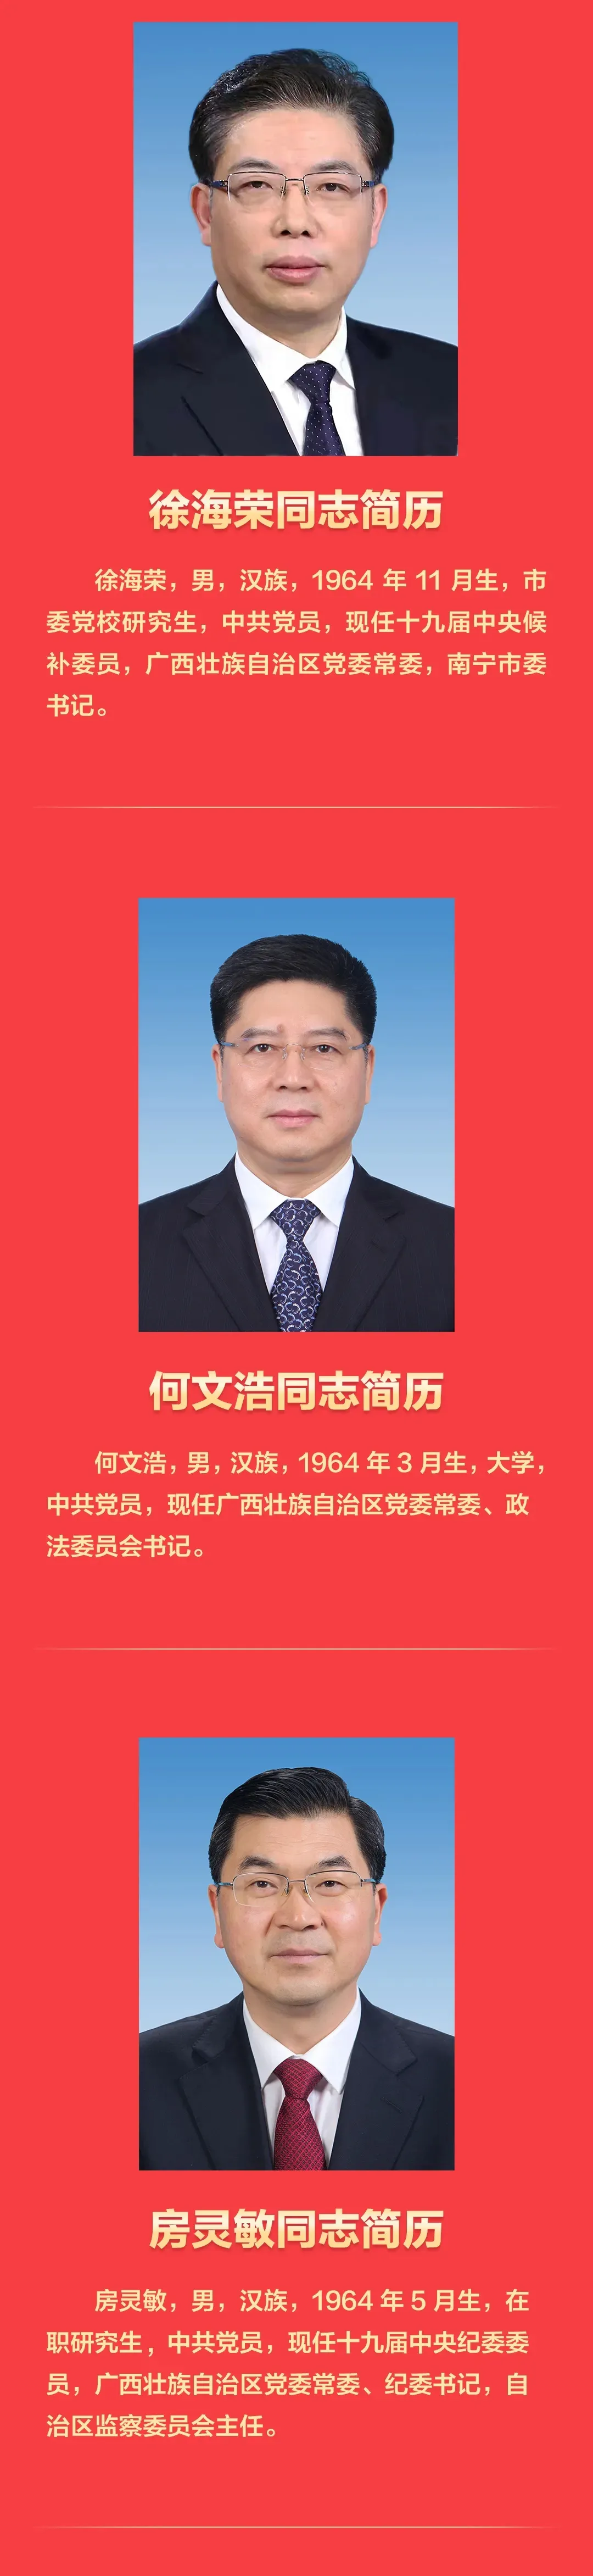 新一届广西壮族自治区党委常委班子亮相 附简历照片